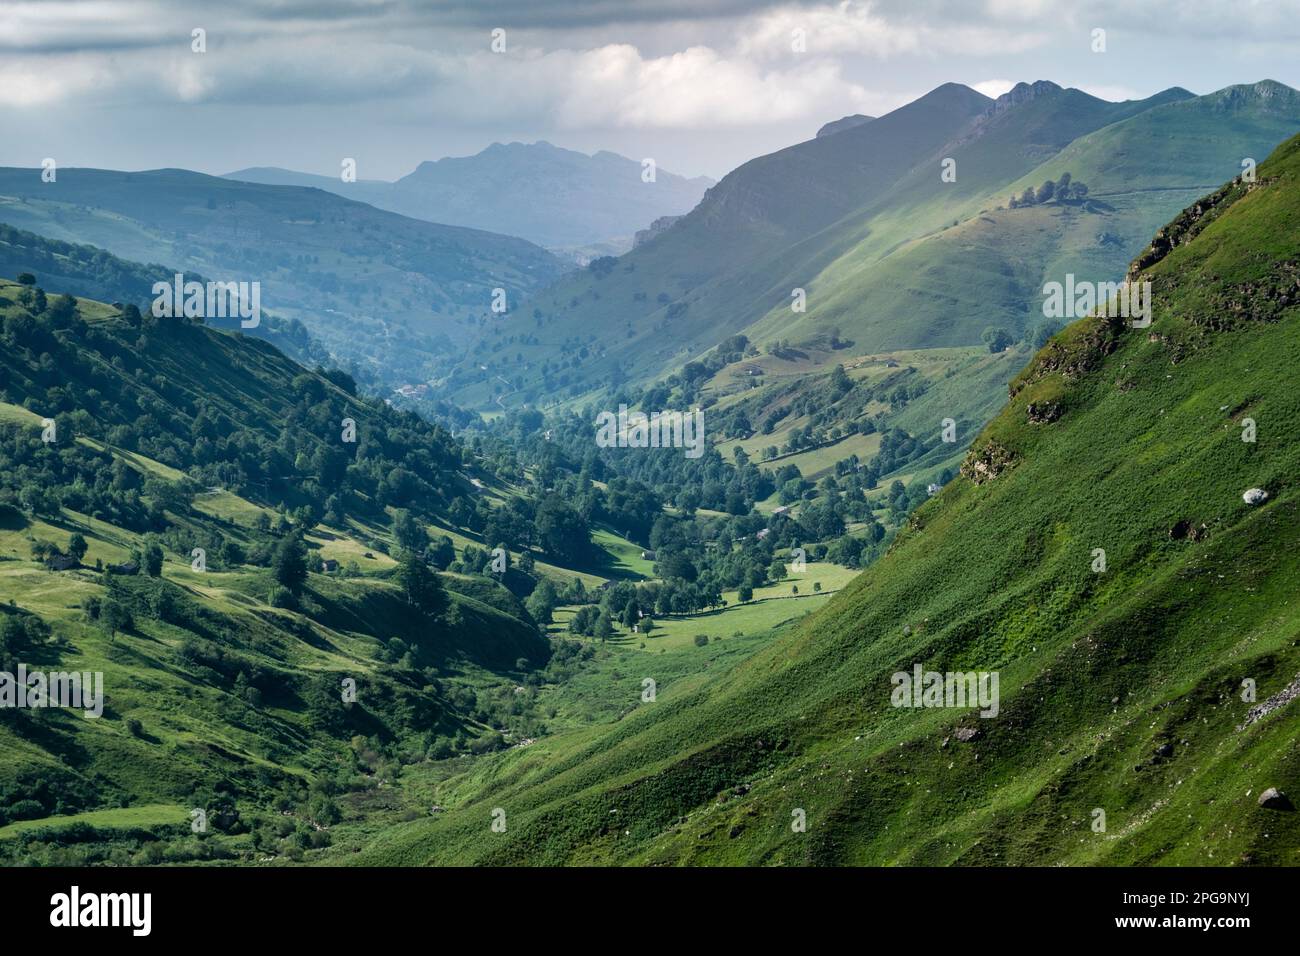 Belle vue sur la vallée verdoyante dans les montagnes, Valles Pasiegos, Cantabrie, Espagne Banque D'Images